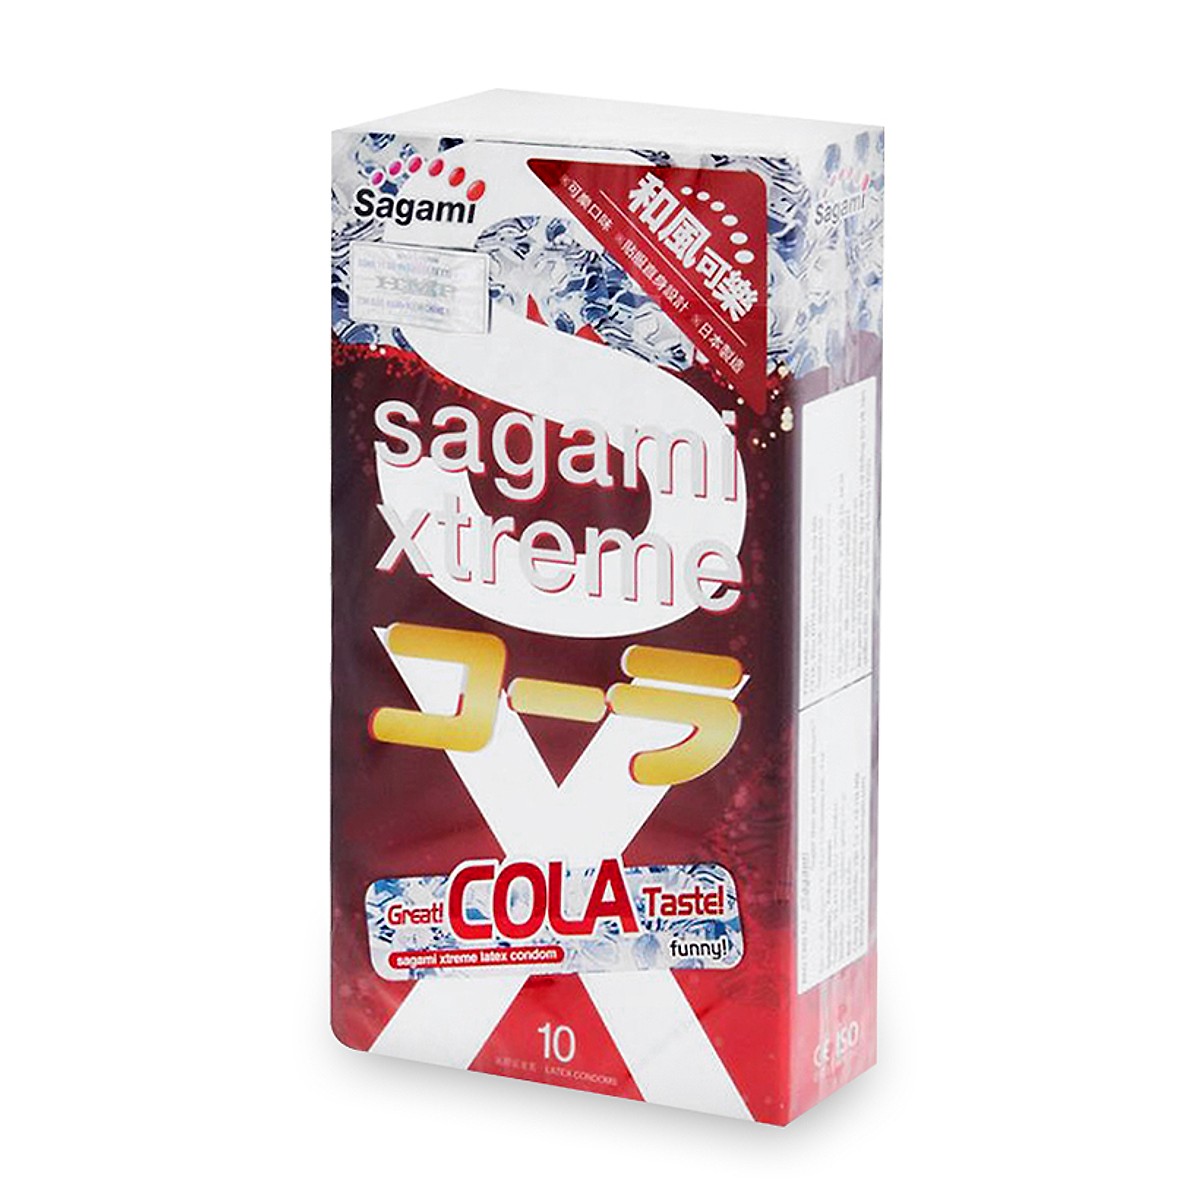 Bao cao su Sagami Xtreme Cola hương vị cola, Hộp 10 cái